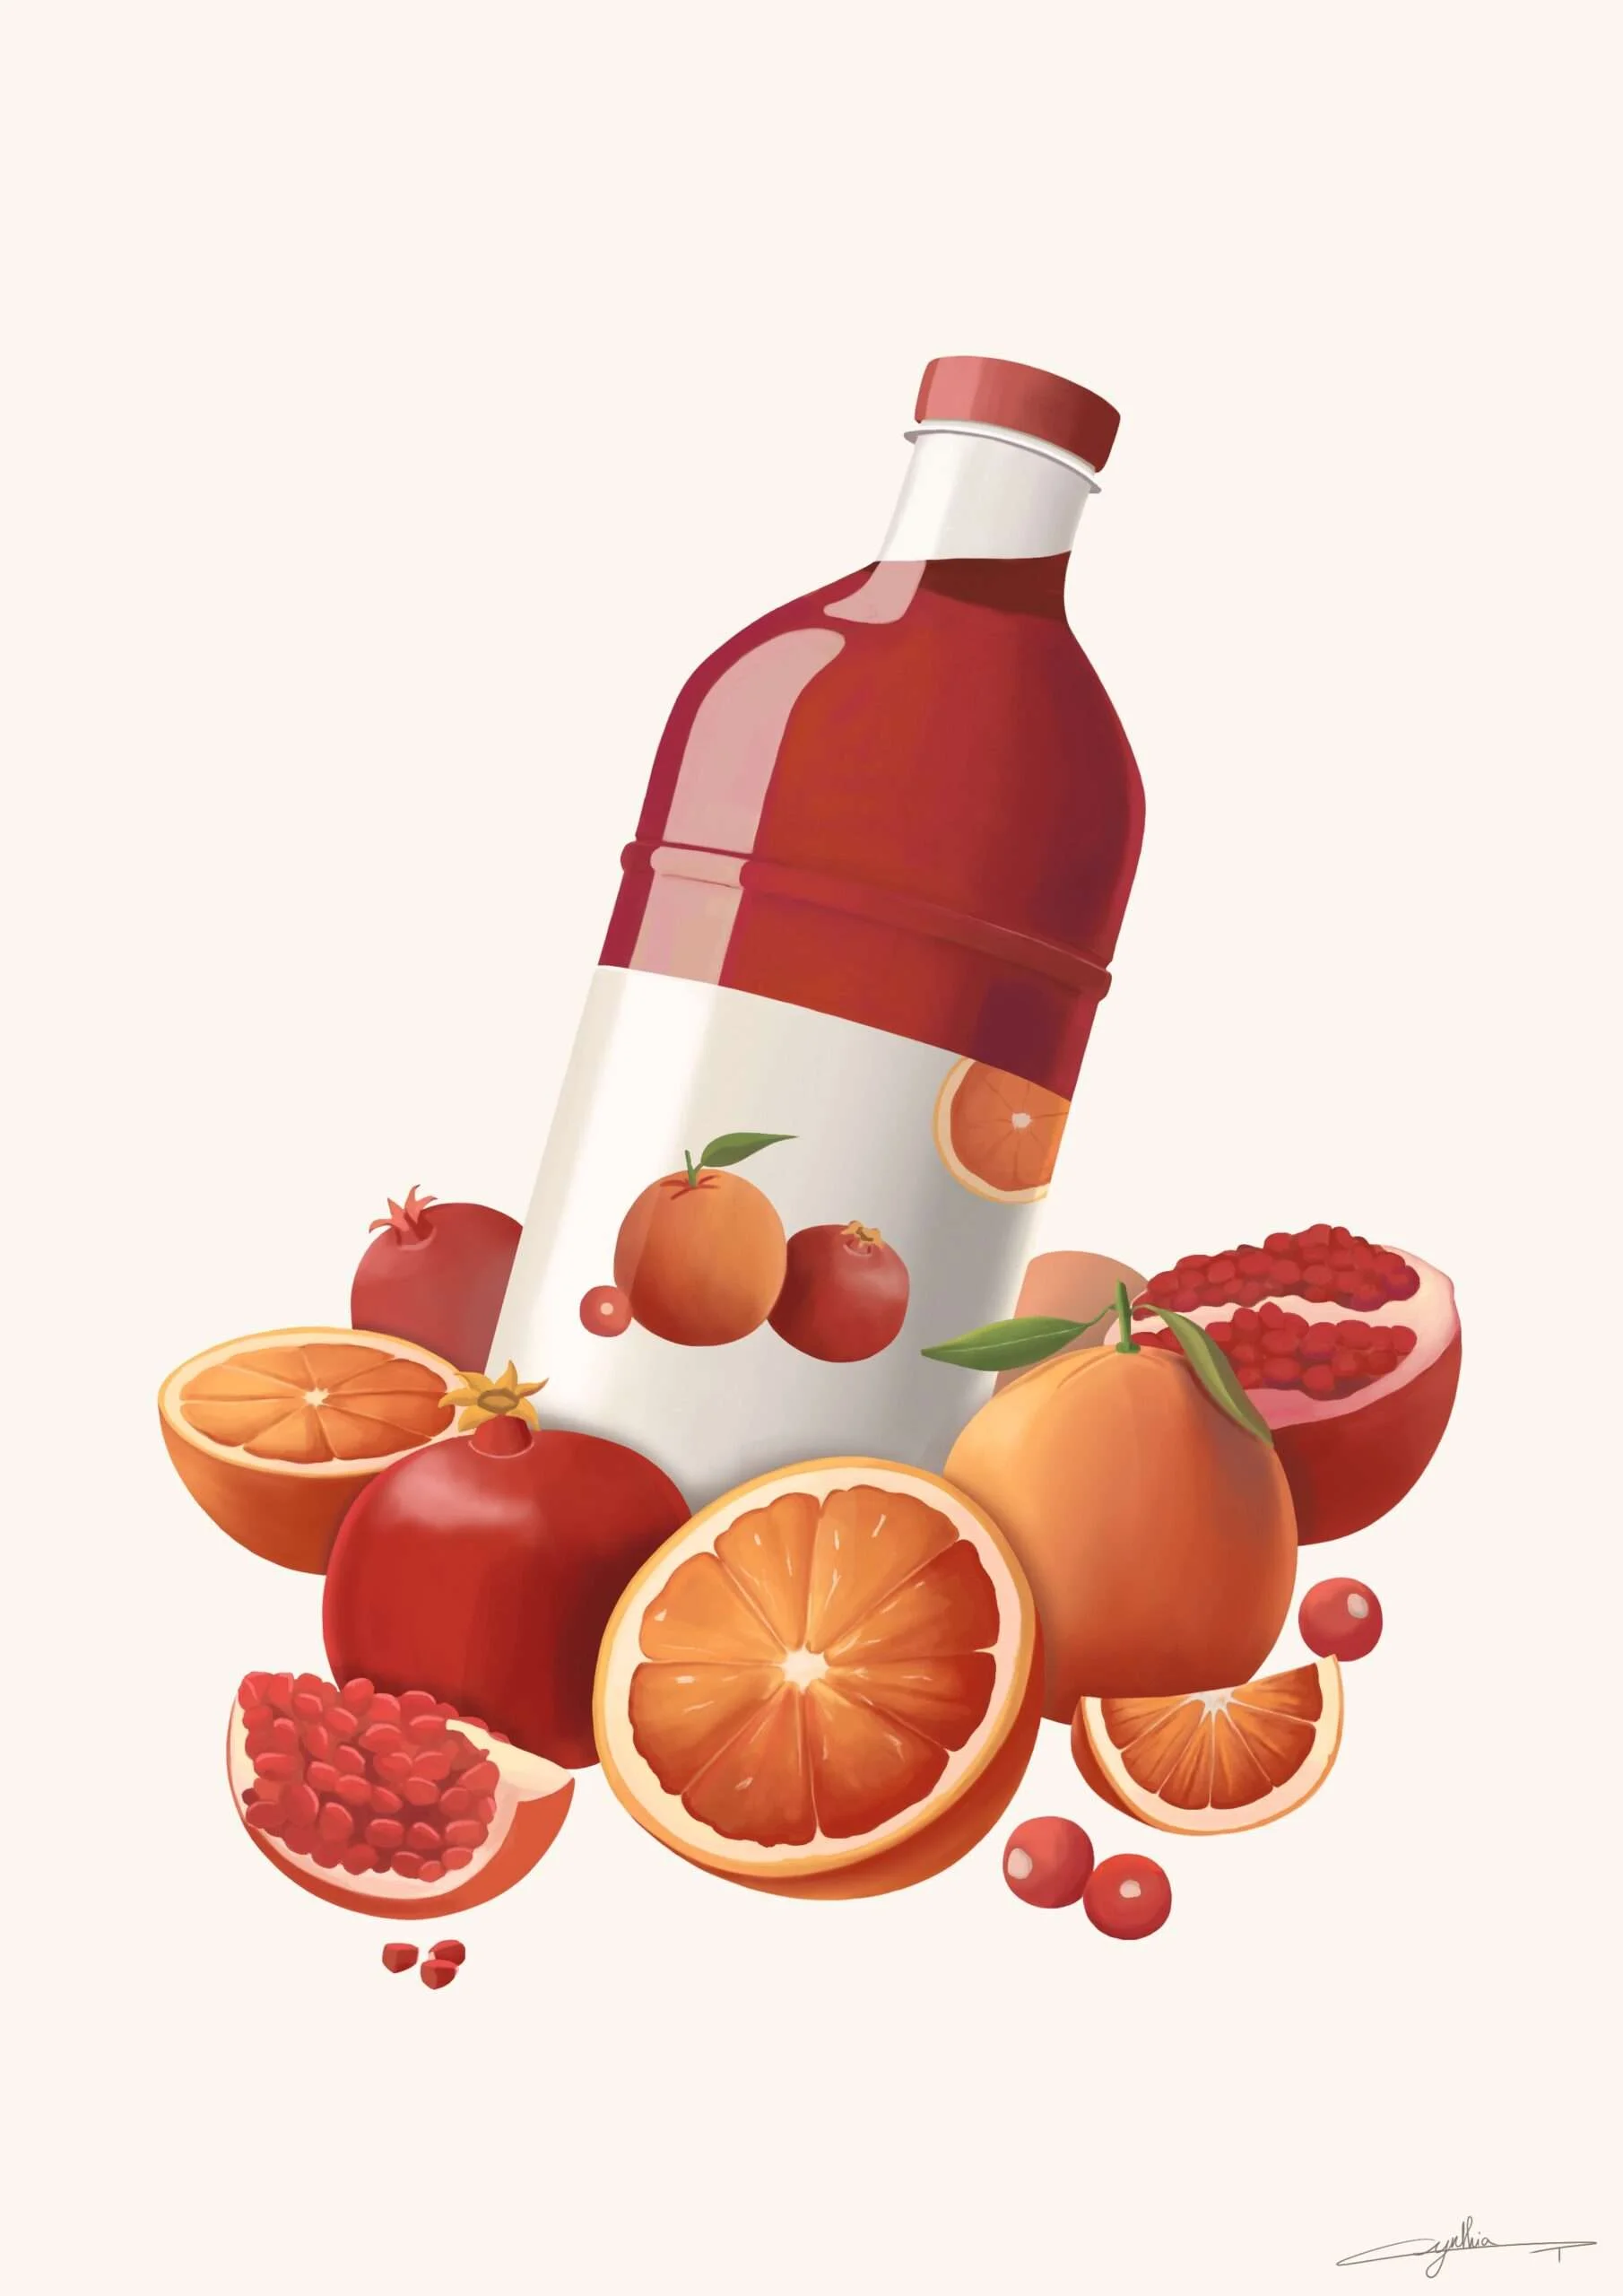 Jus de fruits illustration publicité par l’illustratrice Cynthia Artstudio. Fruit juice